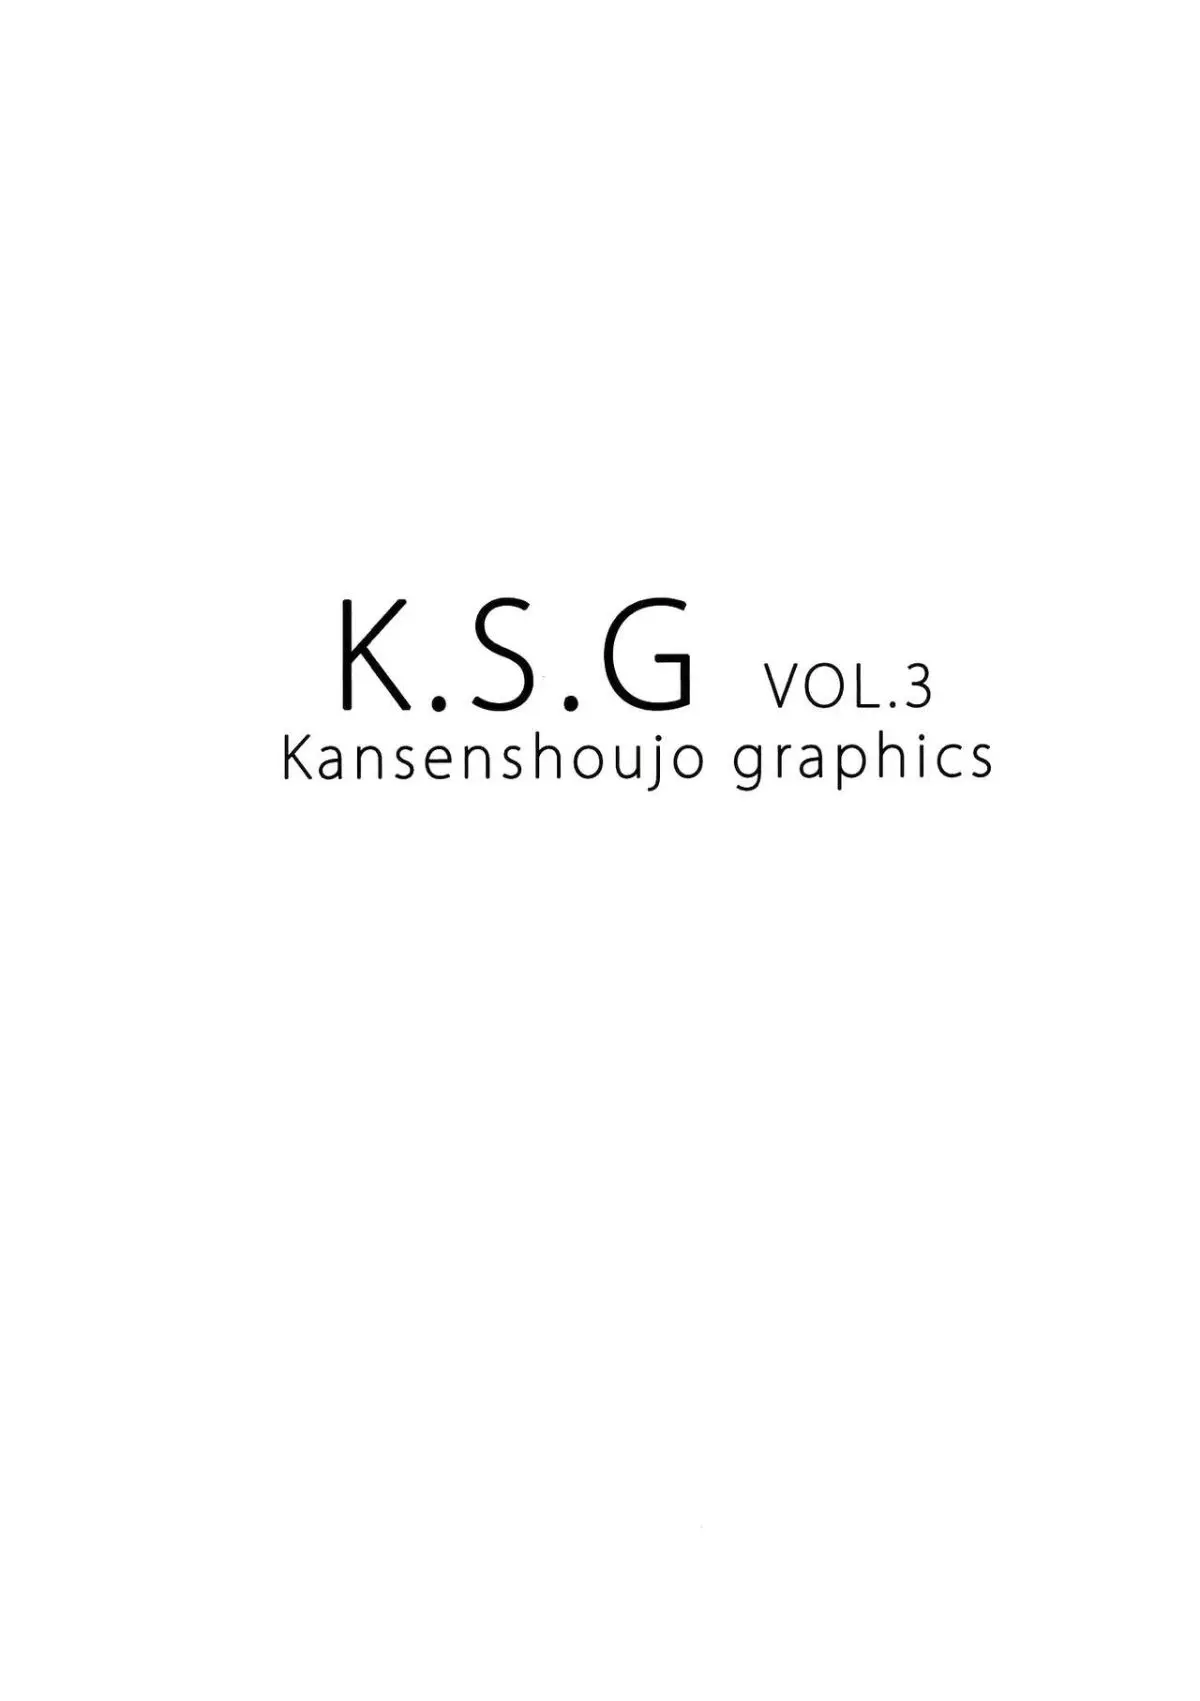 K S G Vol3 ソードアート • オンライン-30